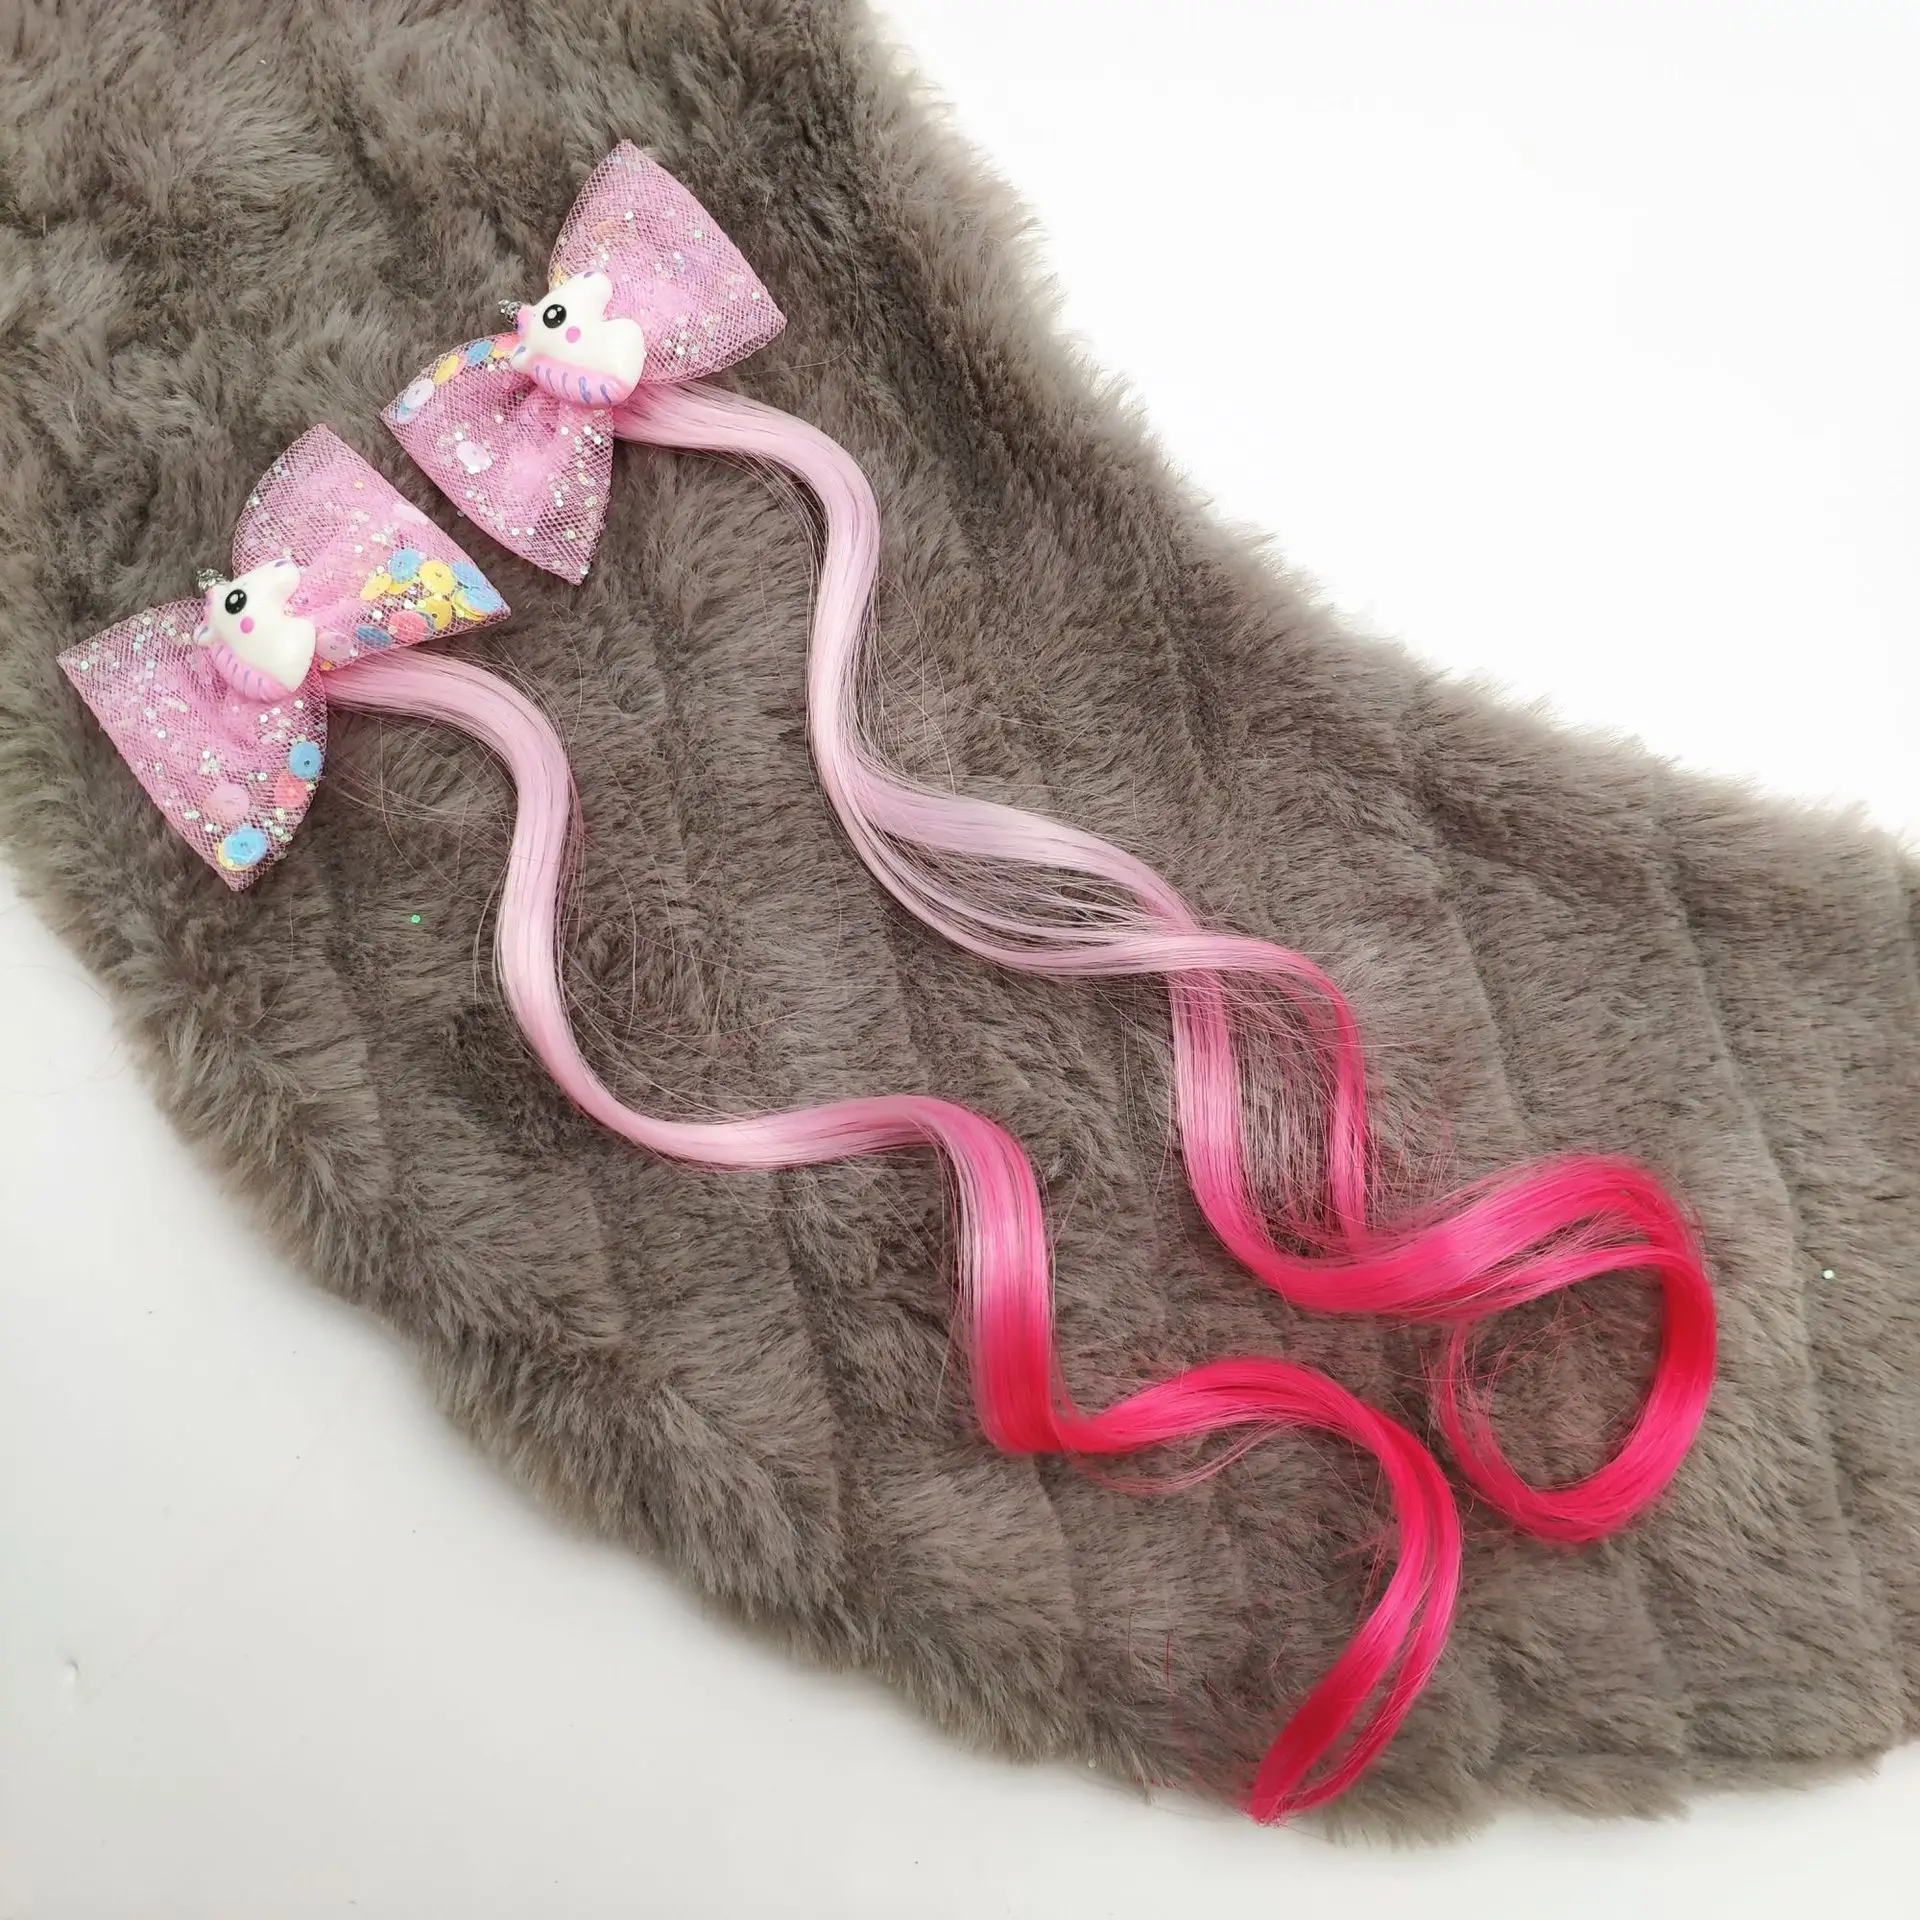 1 Pair Cartoon Hair Pins for Girls Kids Hair Accessories Dress Headwear Princess Braid Hair Clips Children Gift - Цвет: girls hairpins 09